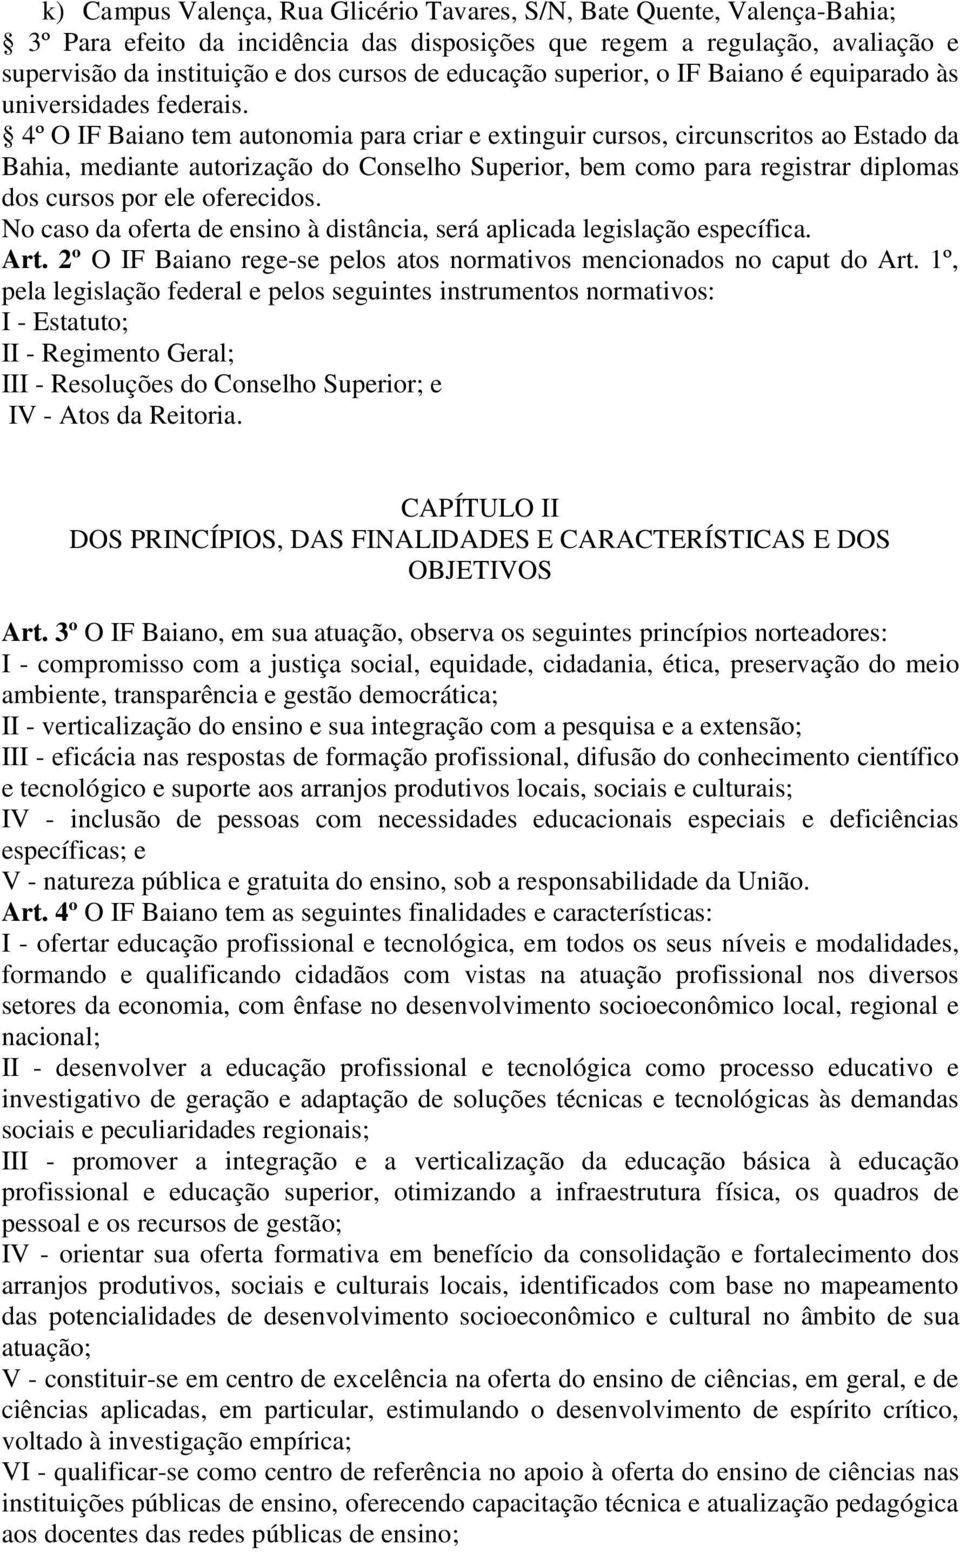 4º O IF Baiano tem autonomia para criar e extinguir cursos, circunscritos ao Estado da Bahia, mediante autorização do Conselho Superior, bem como para registrar diplomas dos cursos por ele oferecidos.